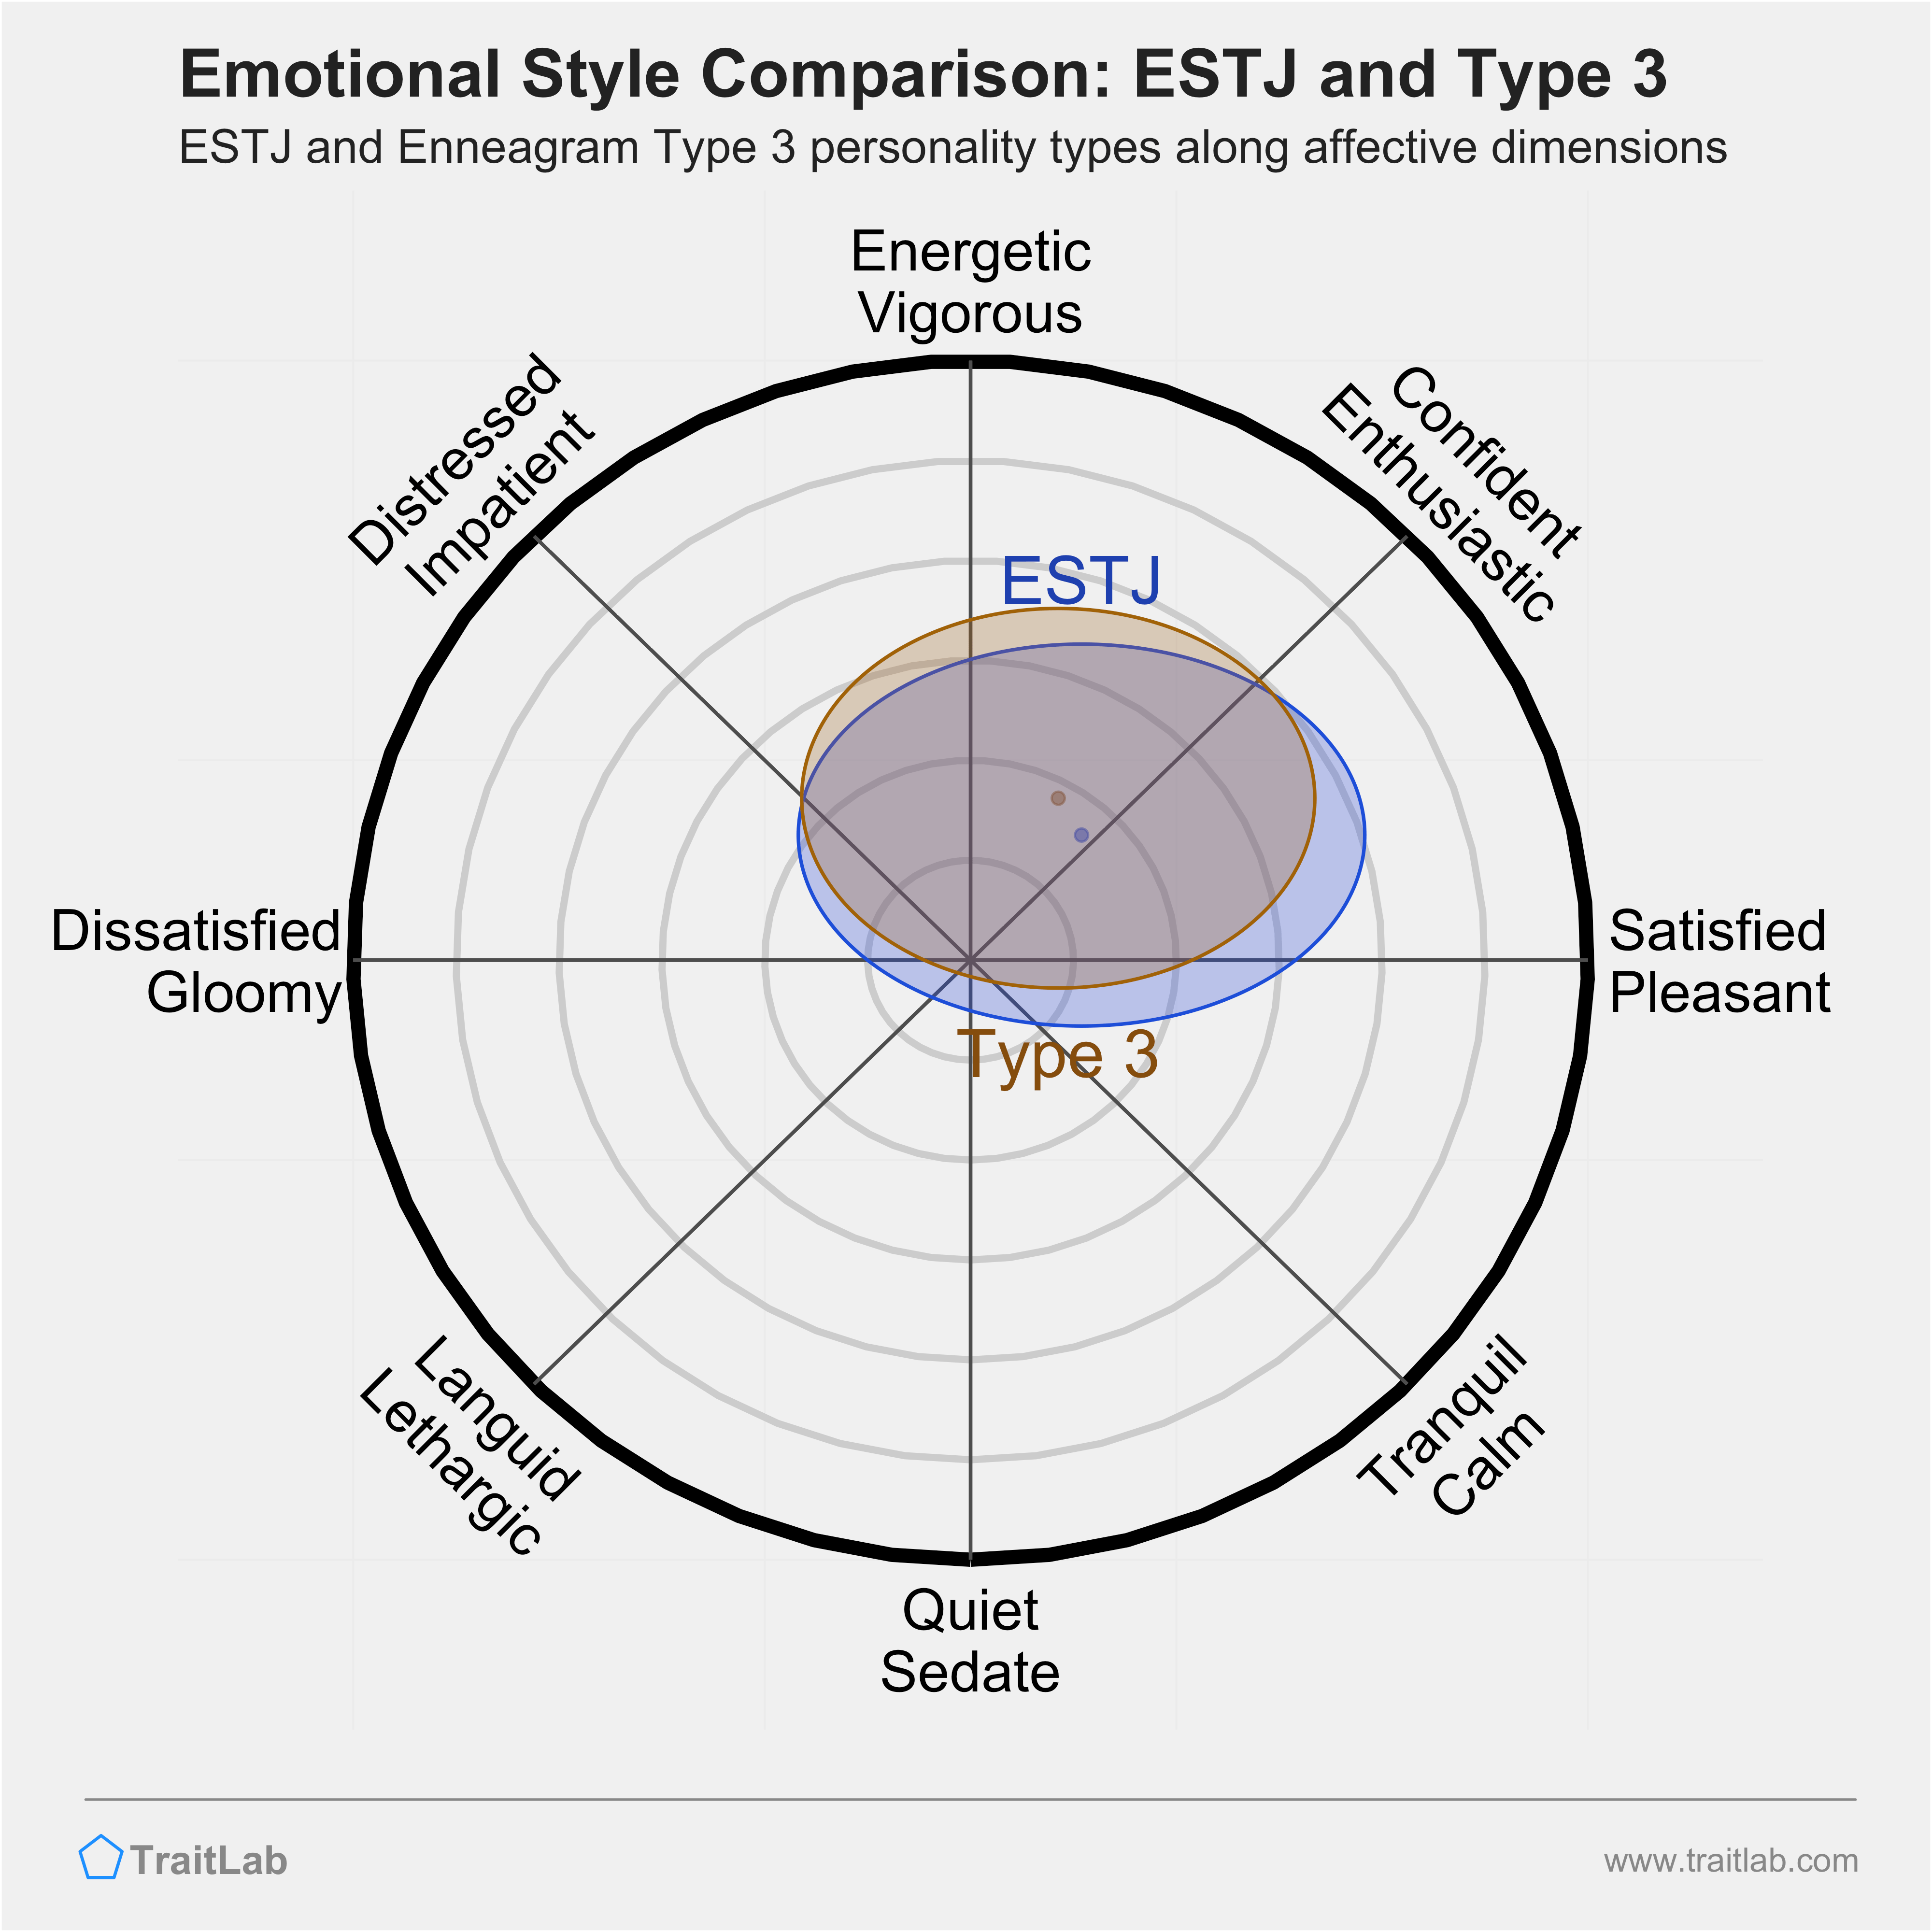 ESTJ and Type 3 comparison across emotional (affective) dimensions